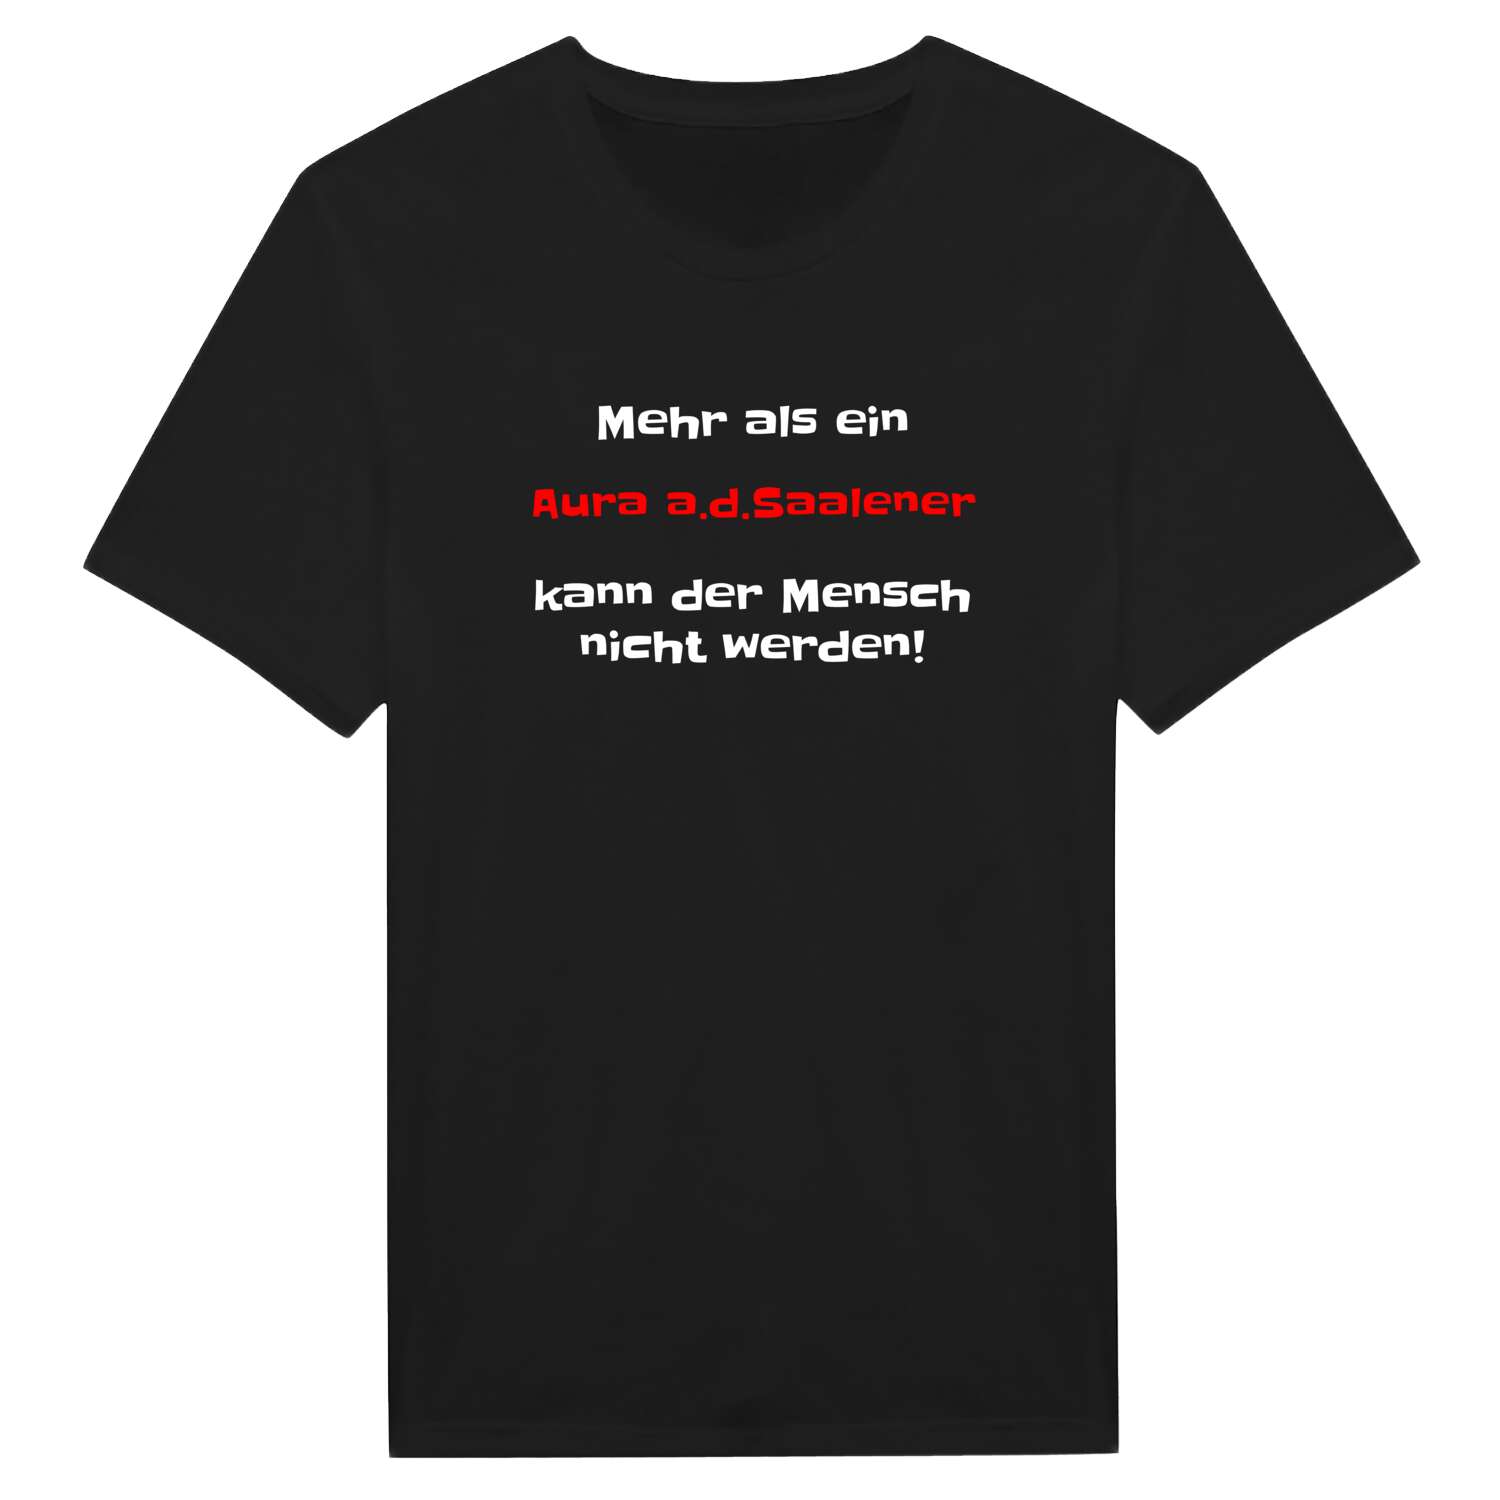 Aura a.d.Saale T-Shirt »Mehr als ein«